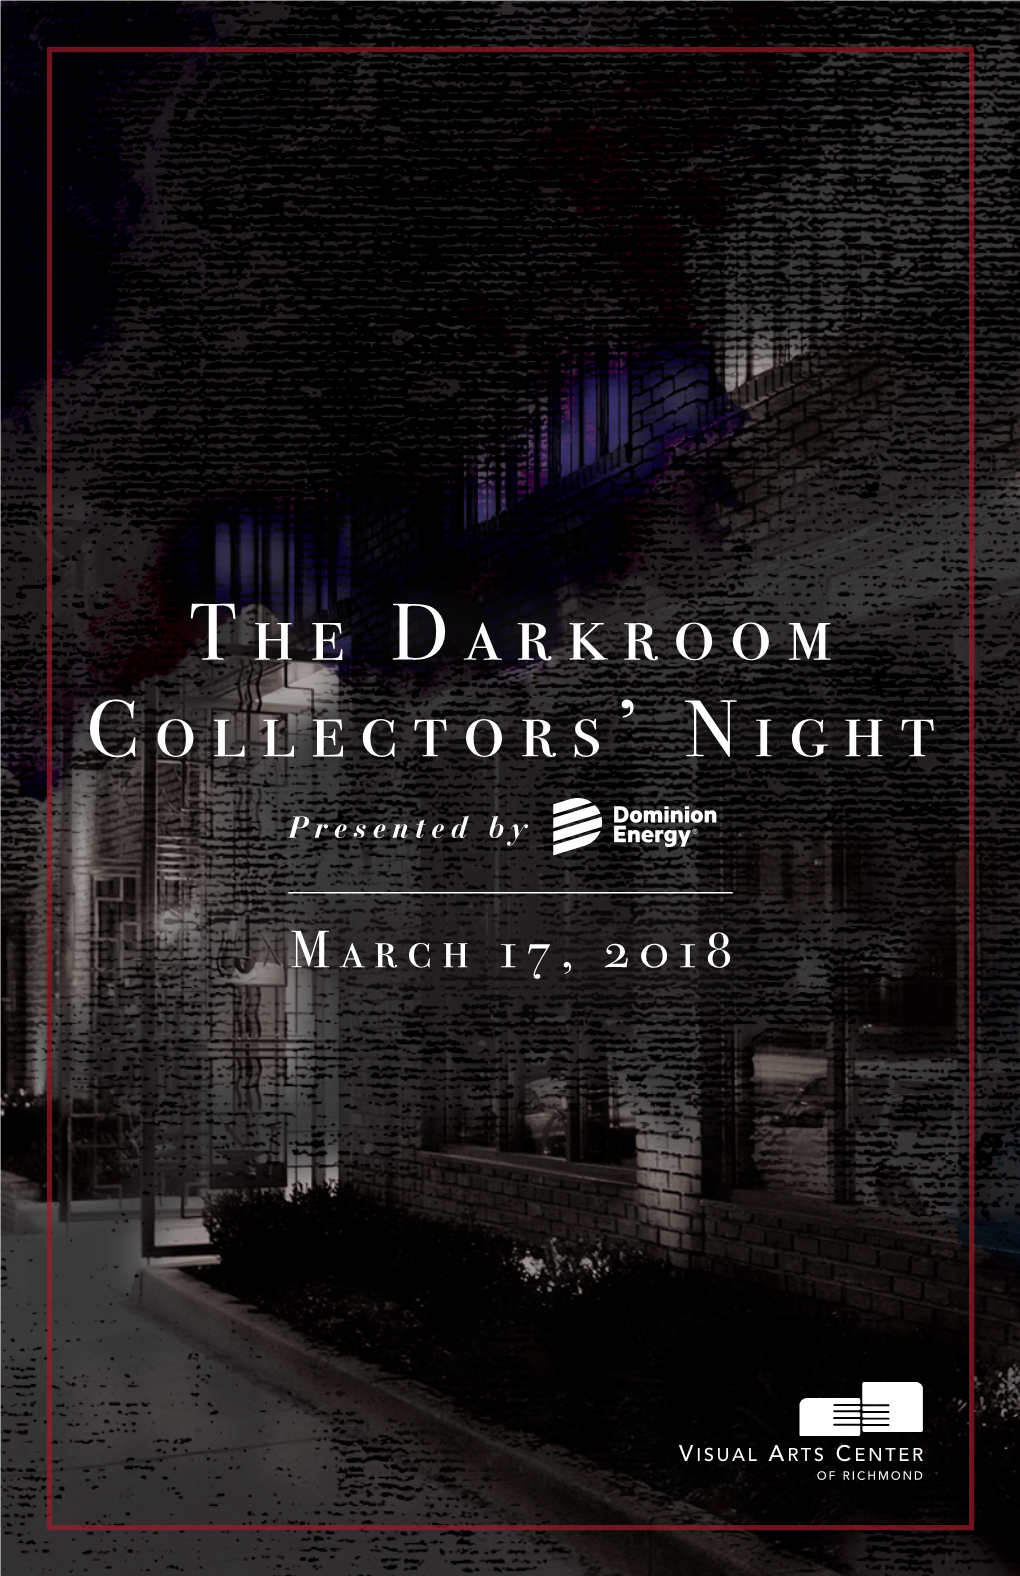 The Darkroom Collectors' Night